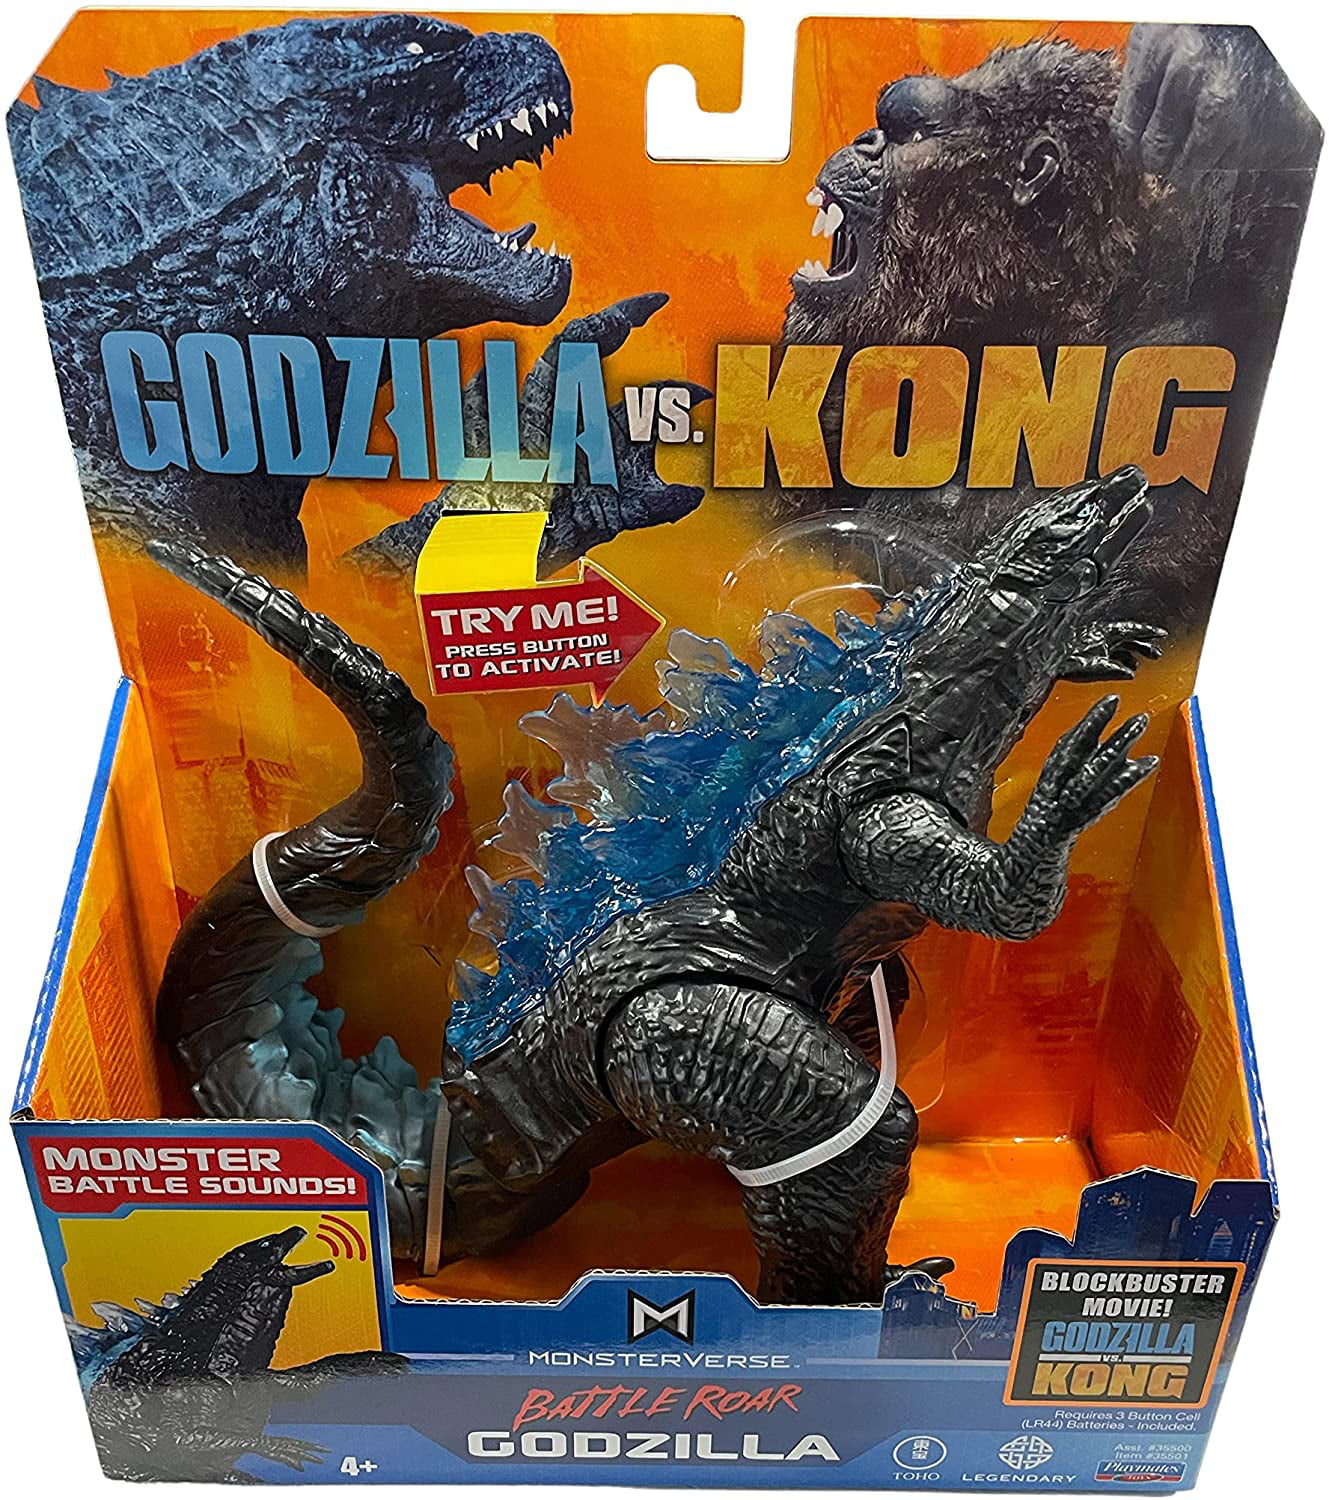 Playmates Godzilla vs Kong 6" Action Figure New Supercharged Godzilla 